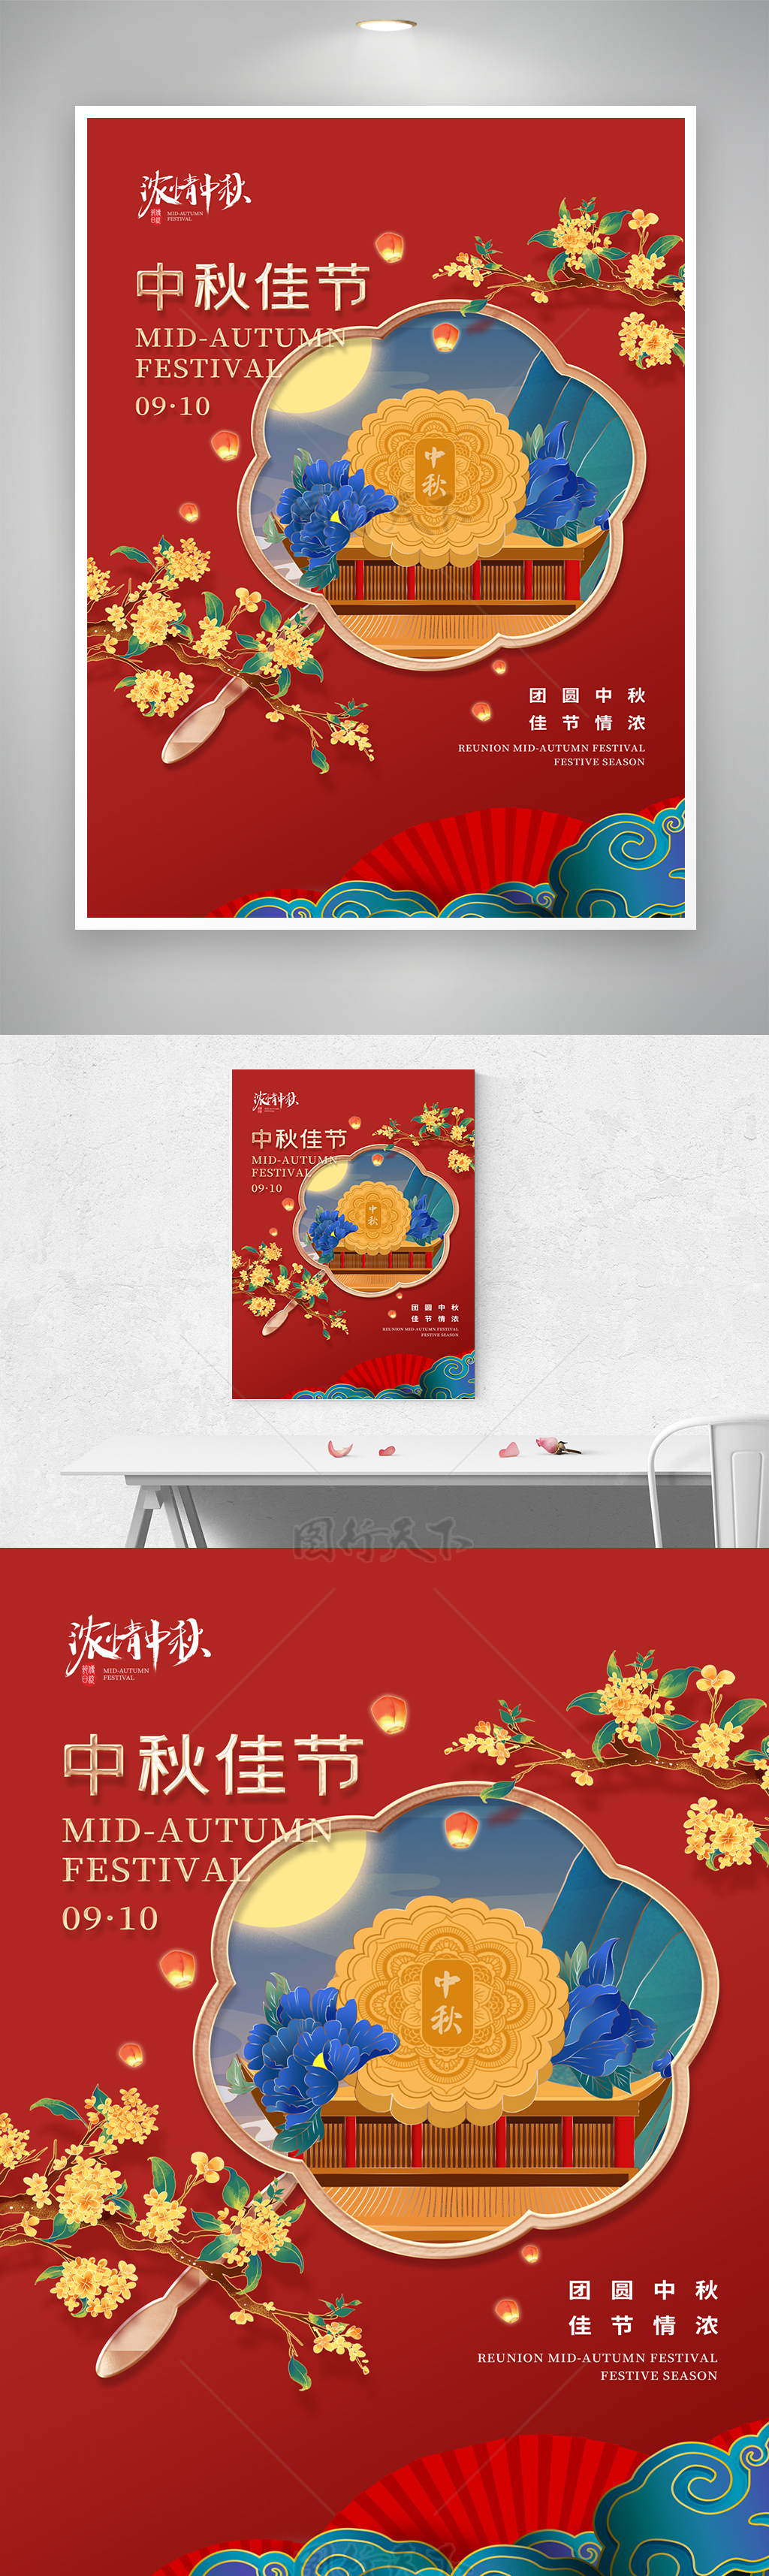 简洁中秋节活动宣传海报